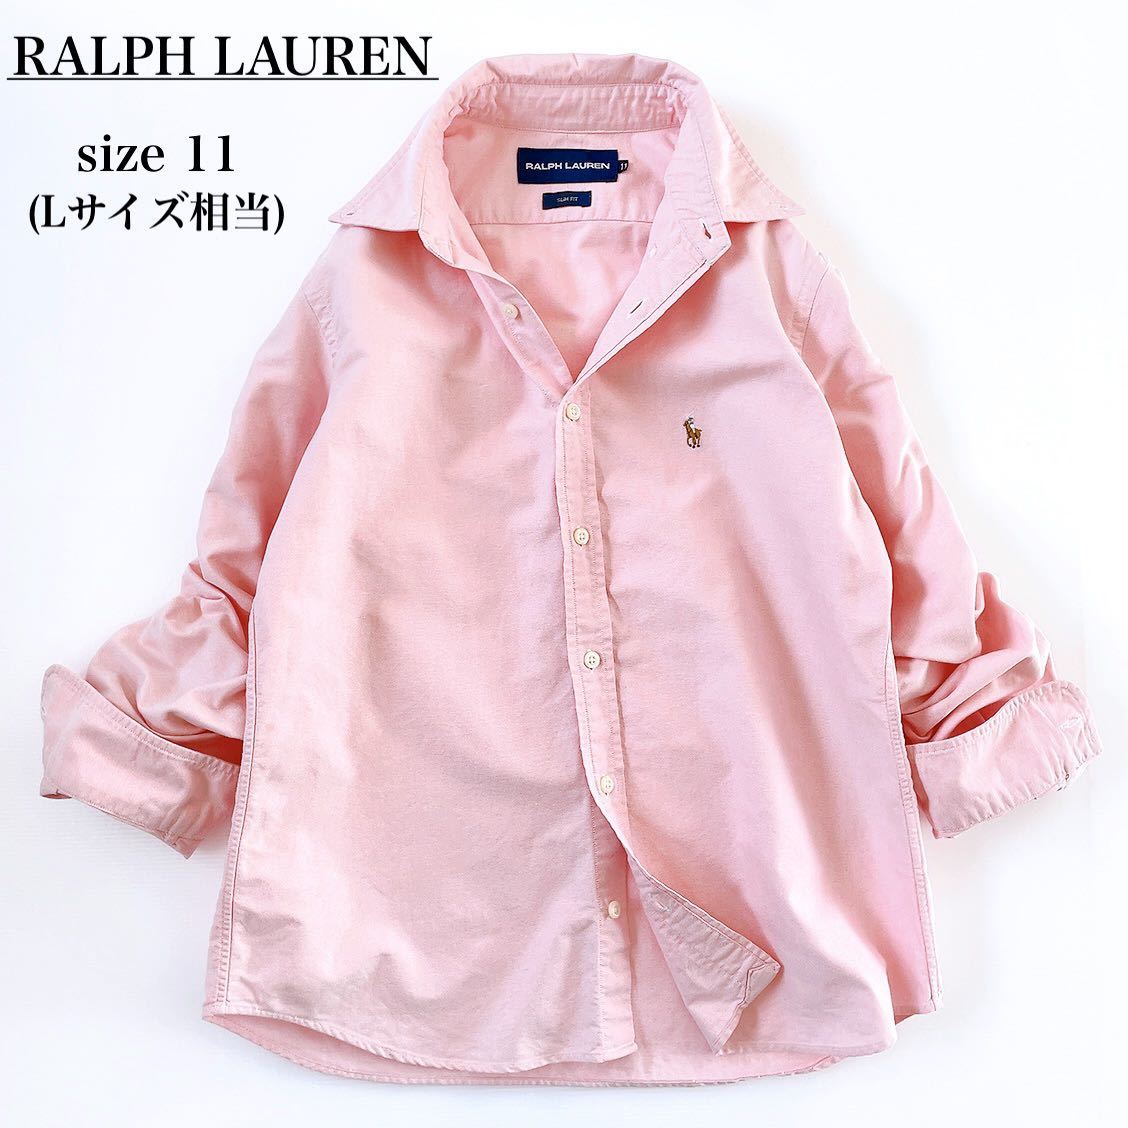 RALPH LAUREN ラルフローレン 11 M L シャツ 長袖 レディース 綿 コットン ピンク ポニー 刺繍 ワンポイント